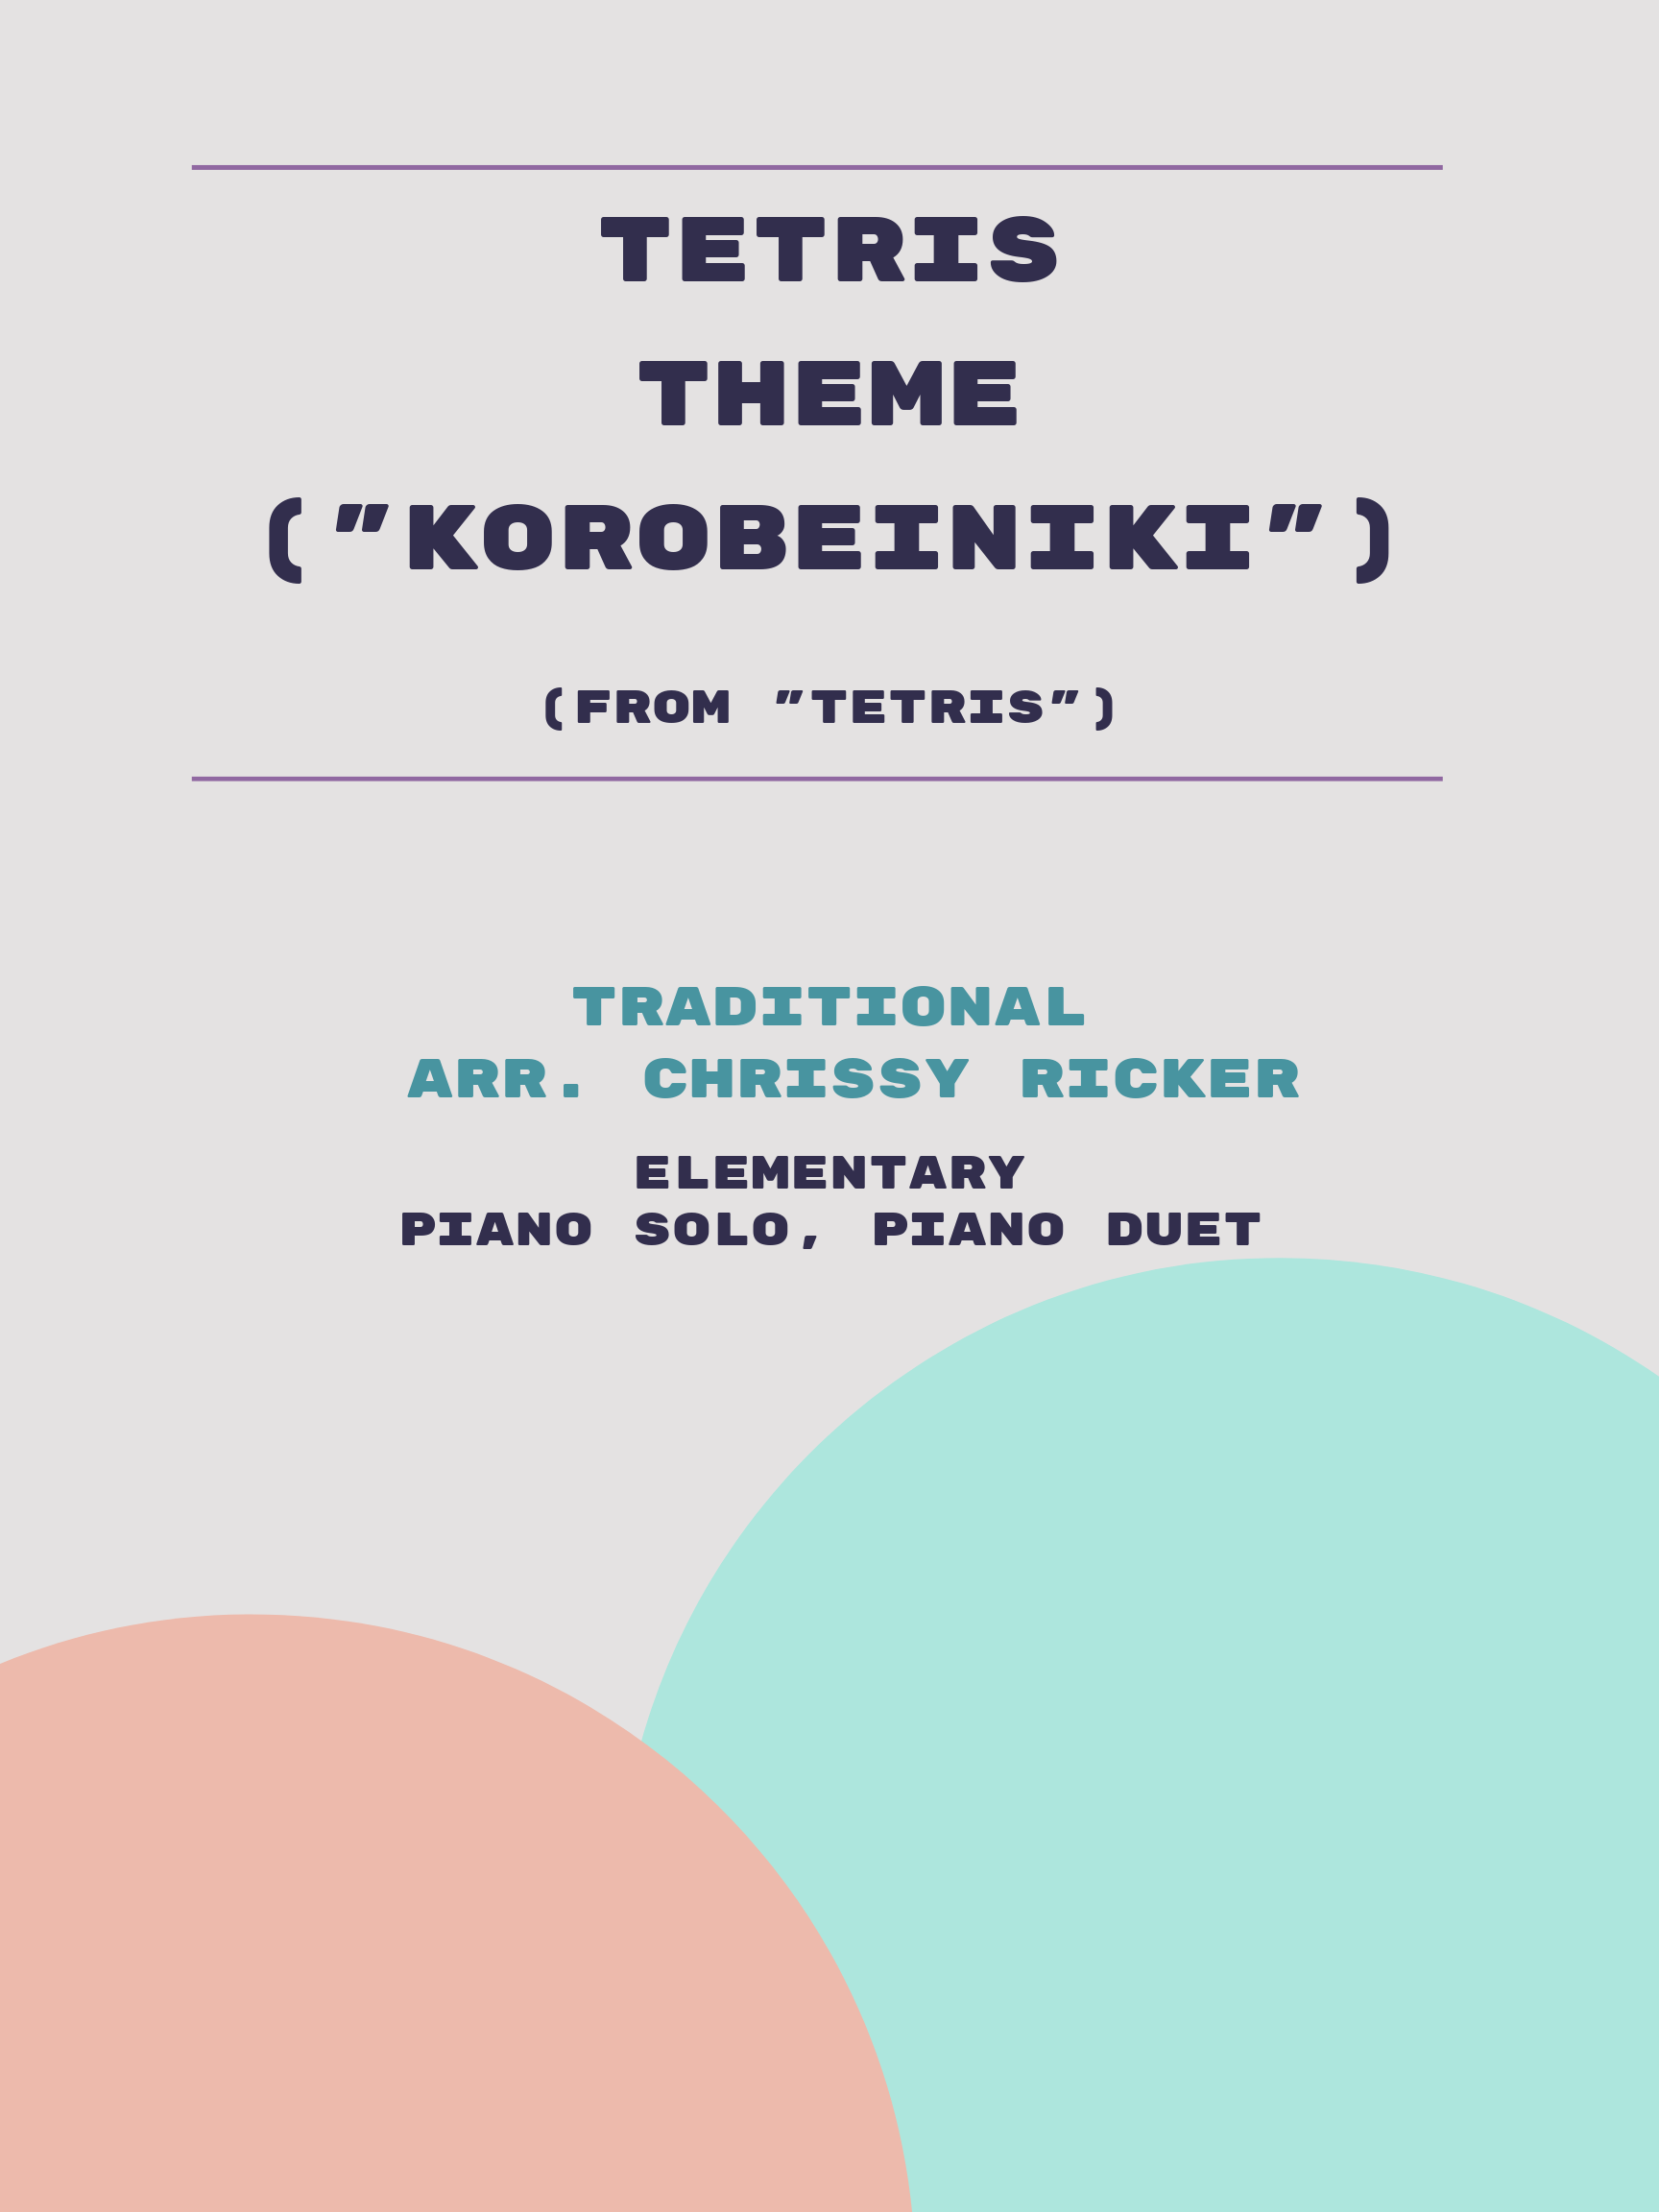 Tetris Theme ("Korobeiniki") by Traditional